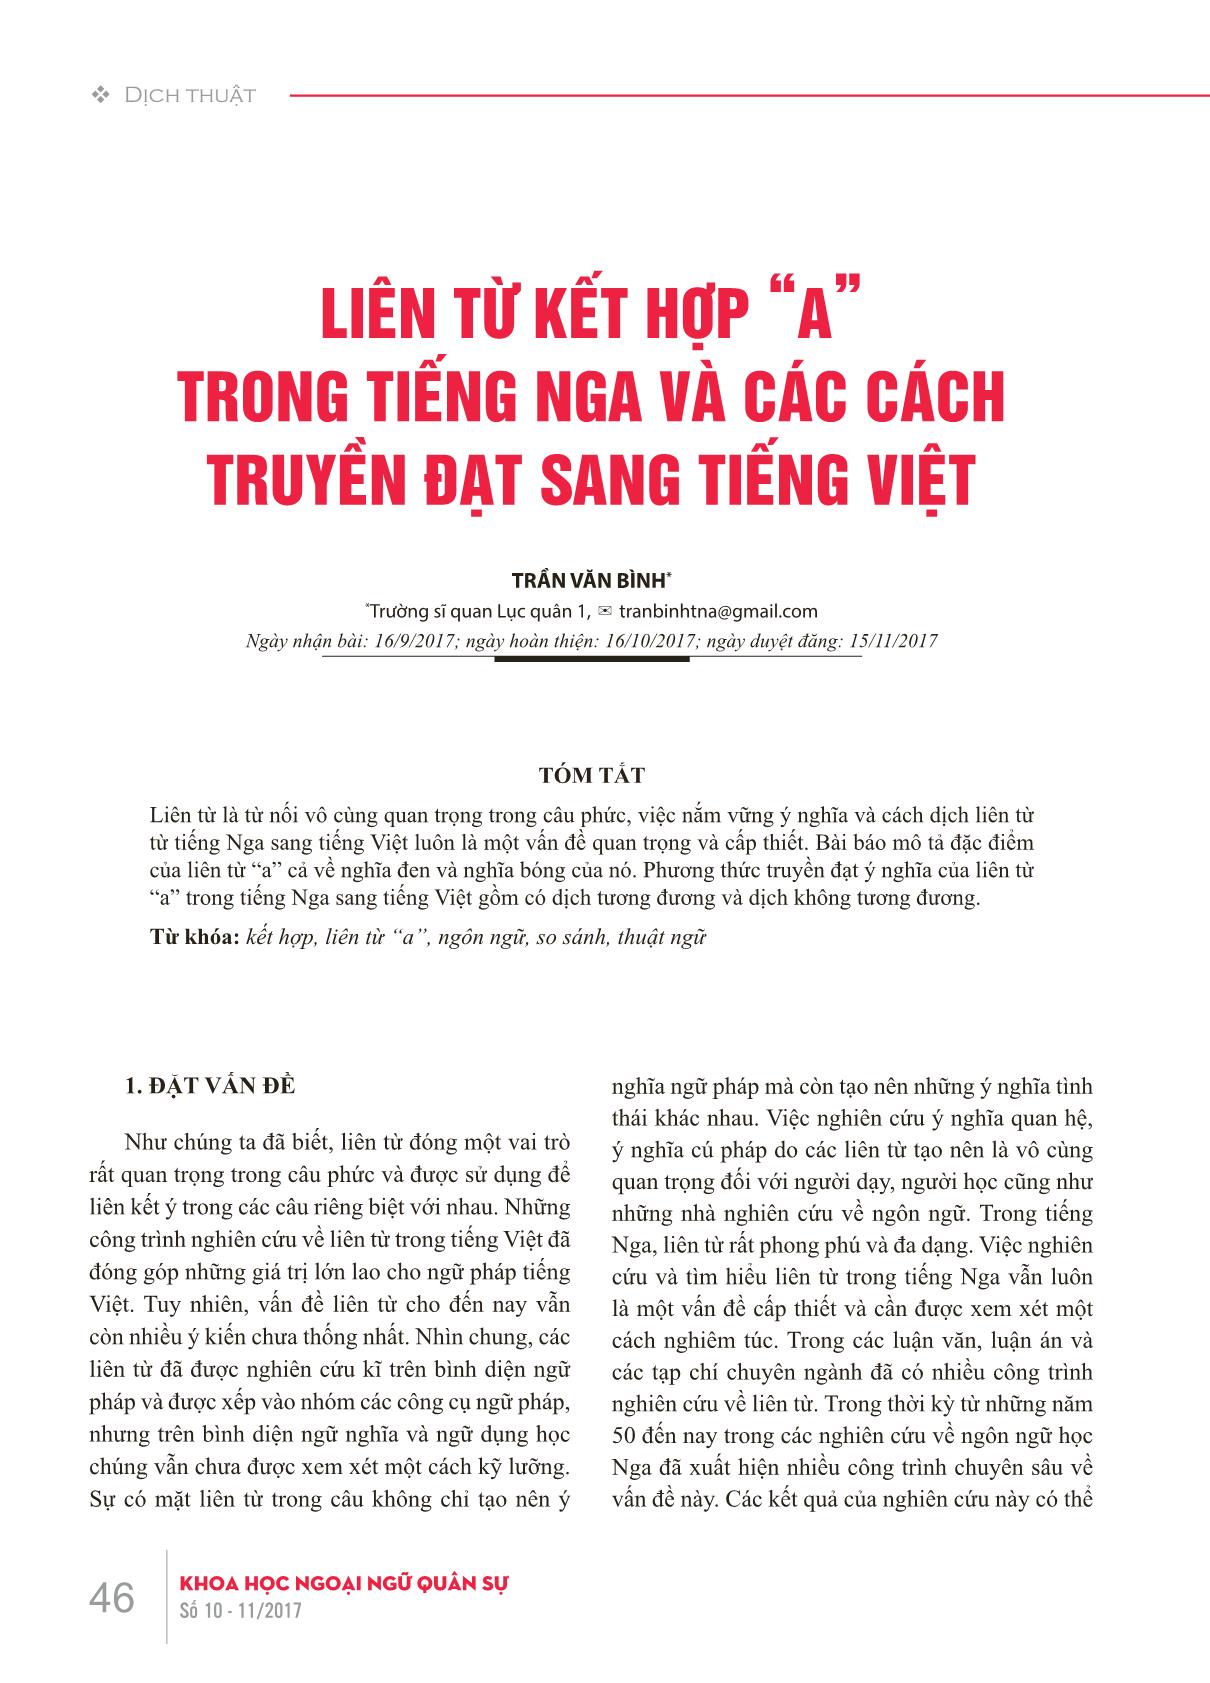 Liên từ kết hợp “a” trong tiếng Nga và các cách truyền đạt sang tiếng Việt trang 1